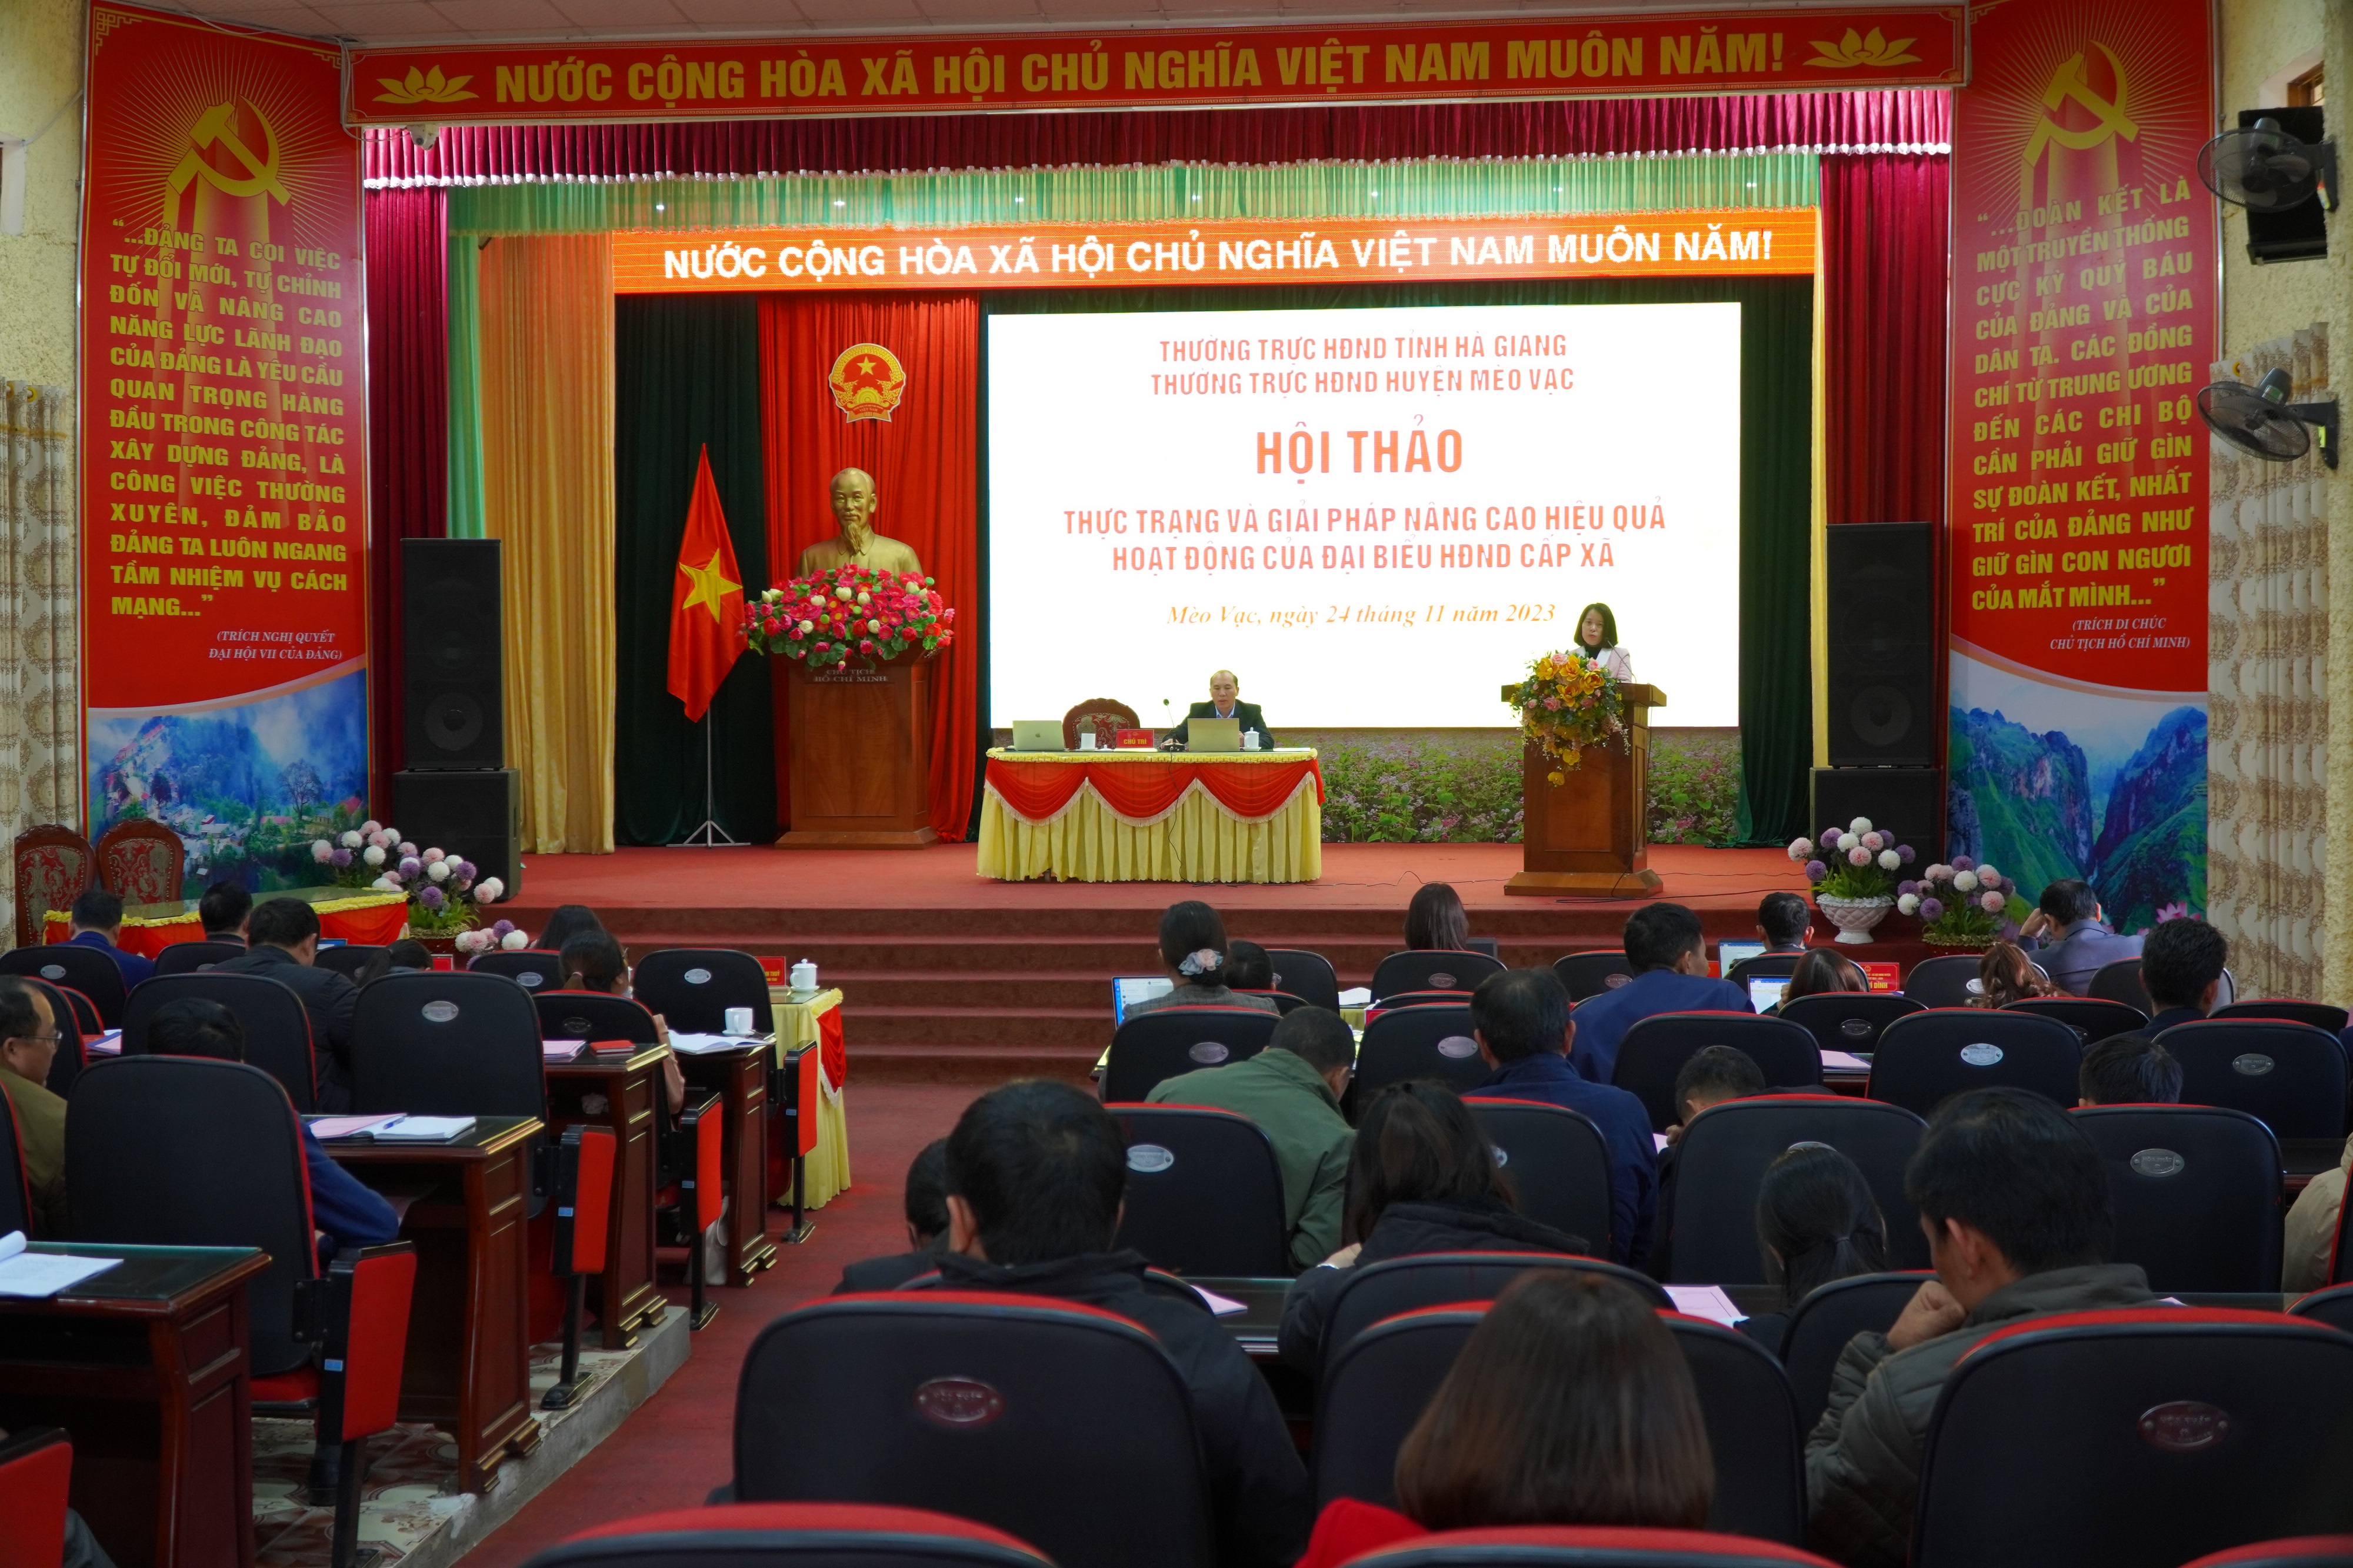 Hội thảo: Thực trạng và giải pháp nâng cao hiệu quả hoạt động của đại biểu HĐND cấp xã, tỉnh Hà Giang